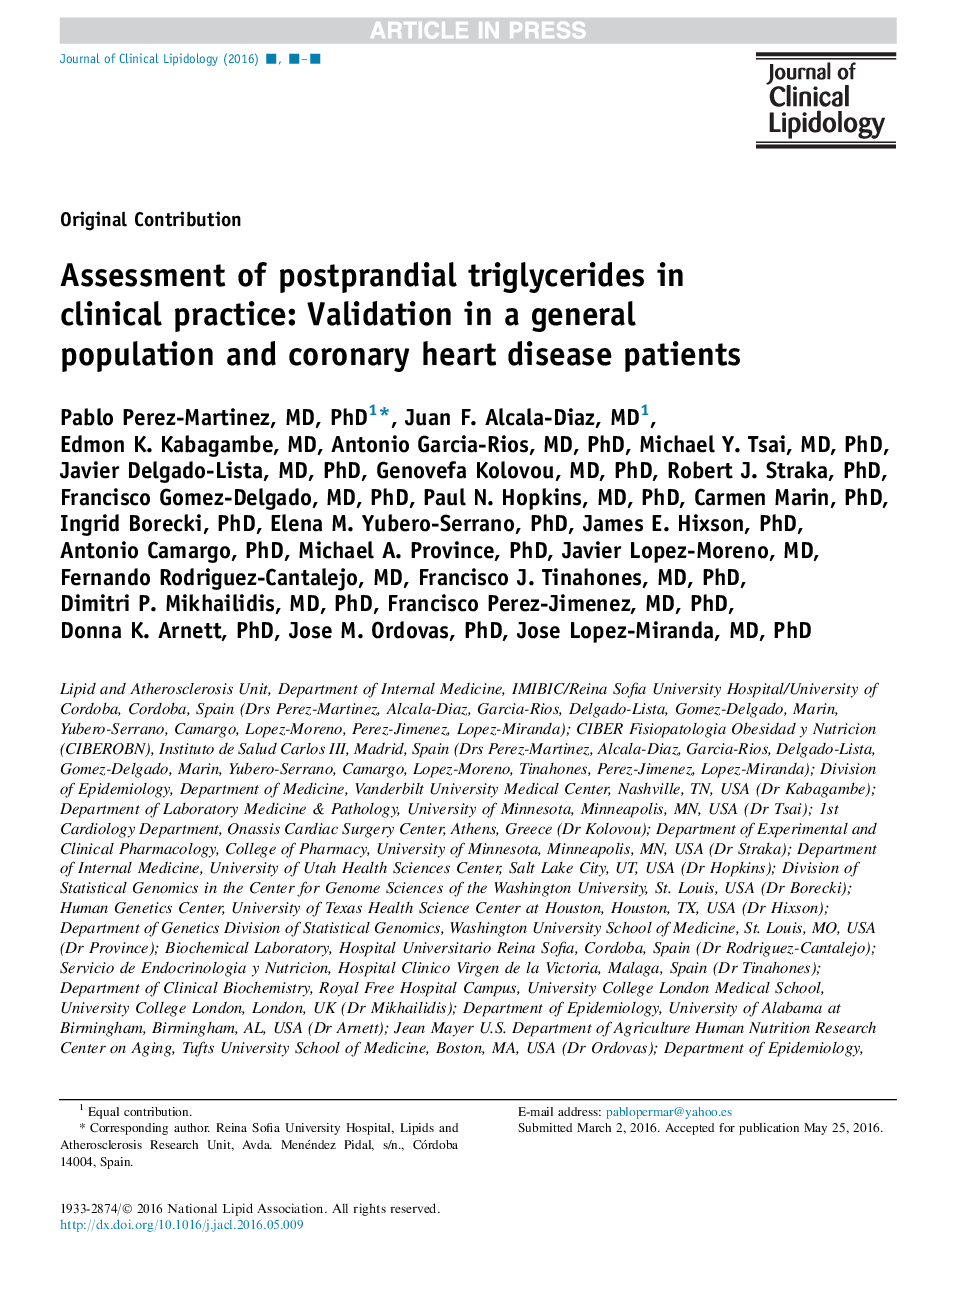 ارزیابی تری گلیسیرید پس از سزارین در عمل بالینی: اعتبار سنجی در یک جمعیت کلی و بیماران مبتلا به بیماری های قلبی عروقی 